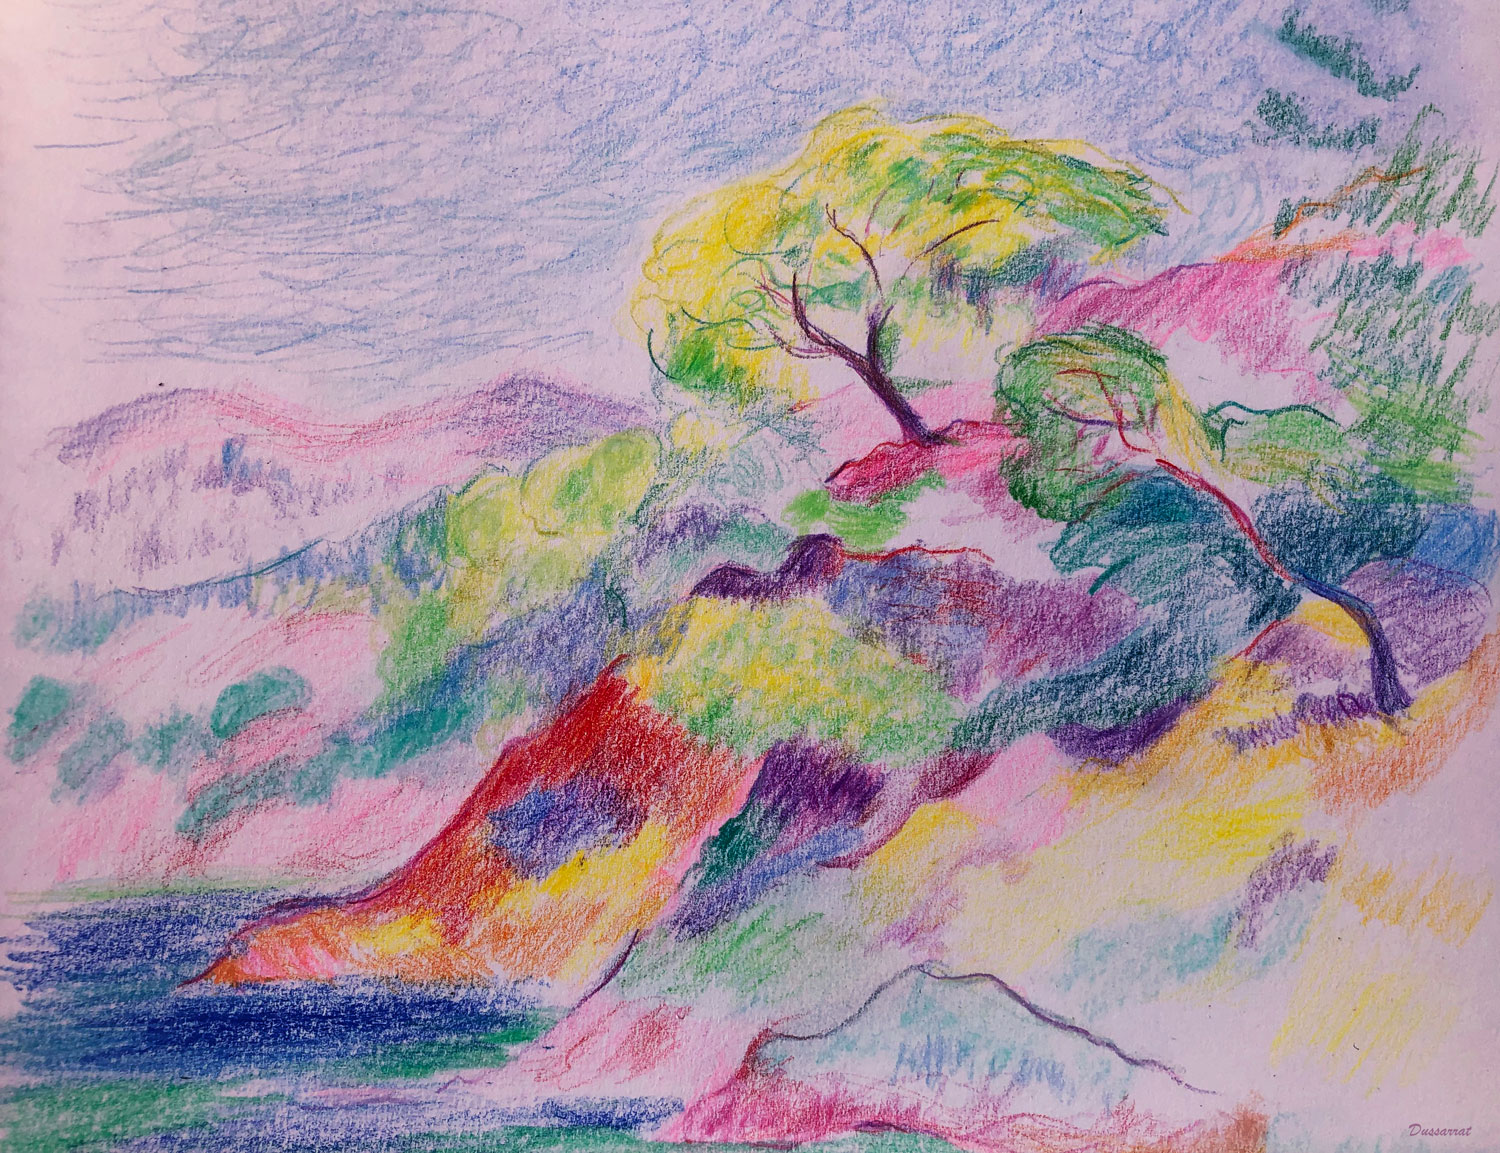 Les roches rouges. Crayon de couleur sur papier. 21x29, 2023. D'après Henri Manguin. Les roches rouges, Cavalière, 1906. Huile sur toile